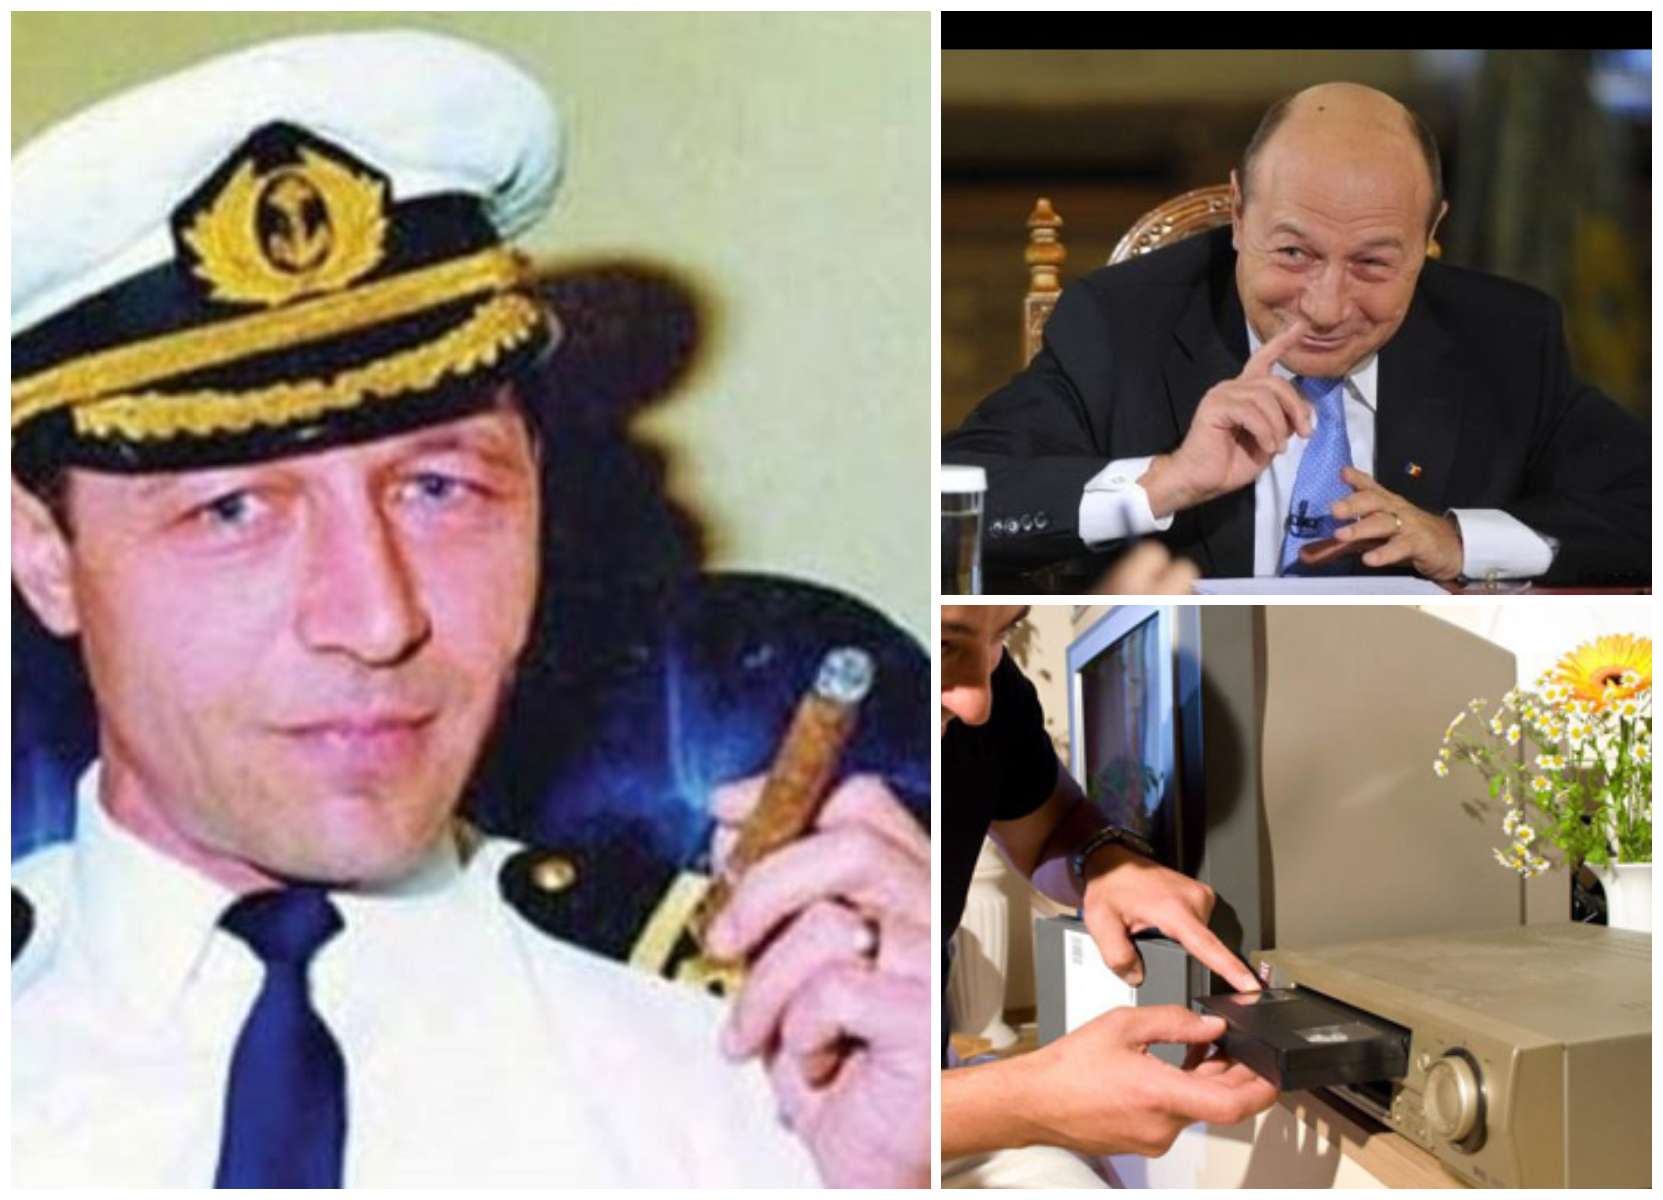 Pe când era căpitan de vas, Traian Băsescu aducea videoplayere, casete video și blugi în țară! Cui i-a recunoscut fostul președinte